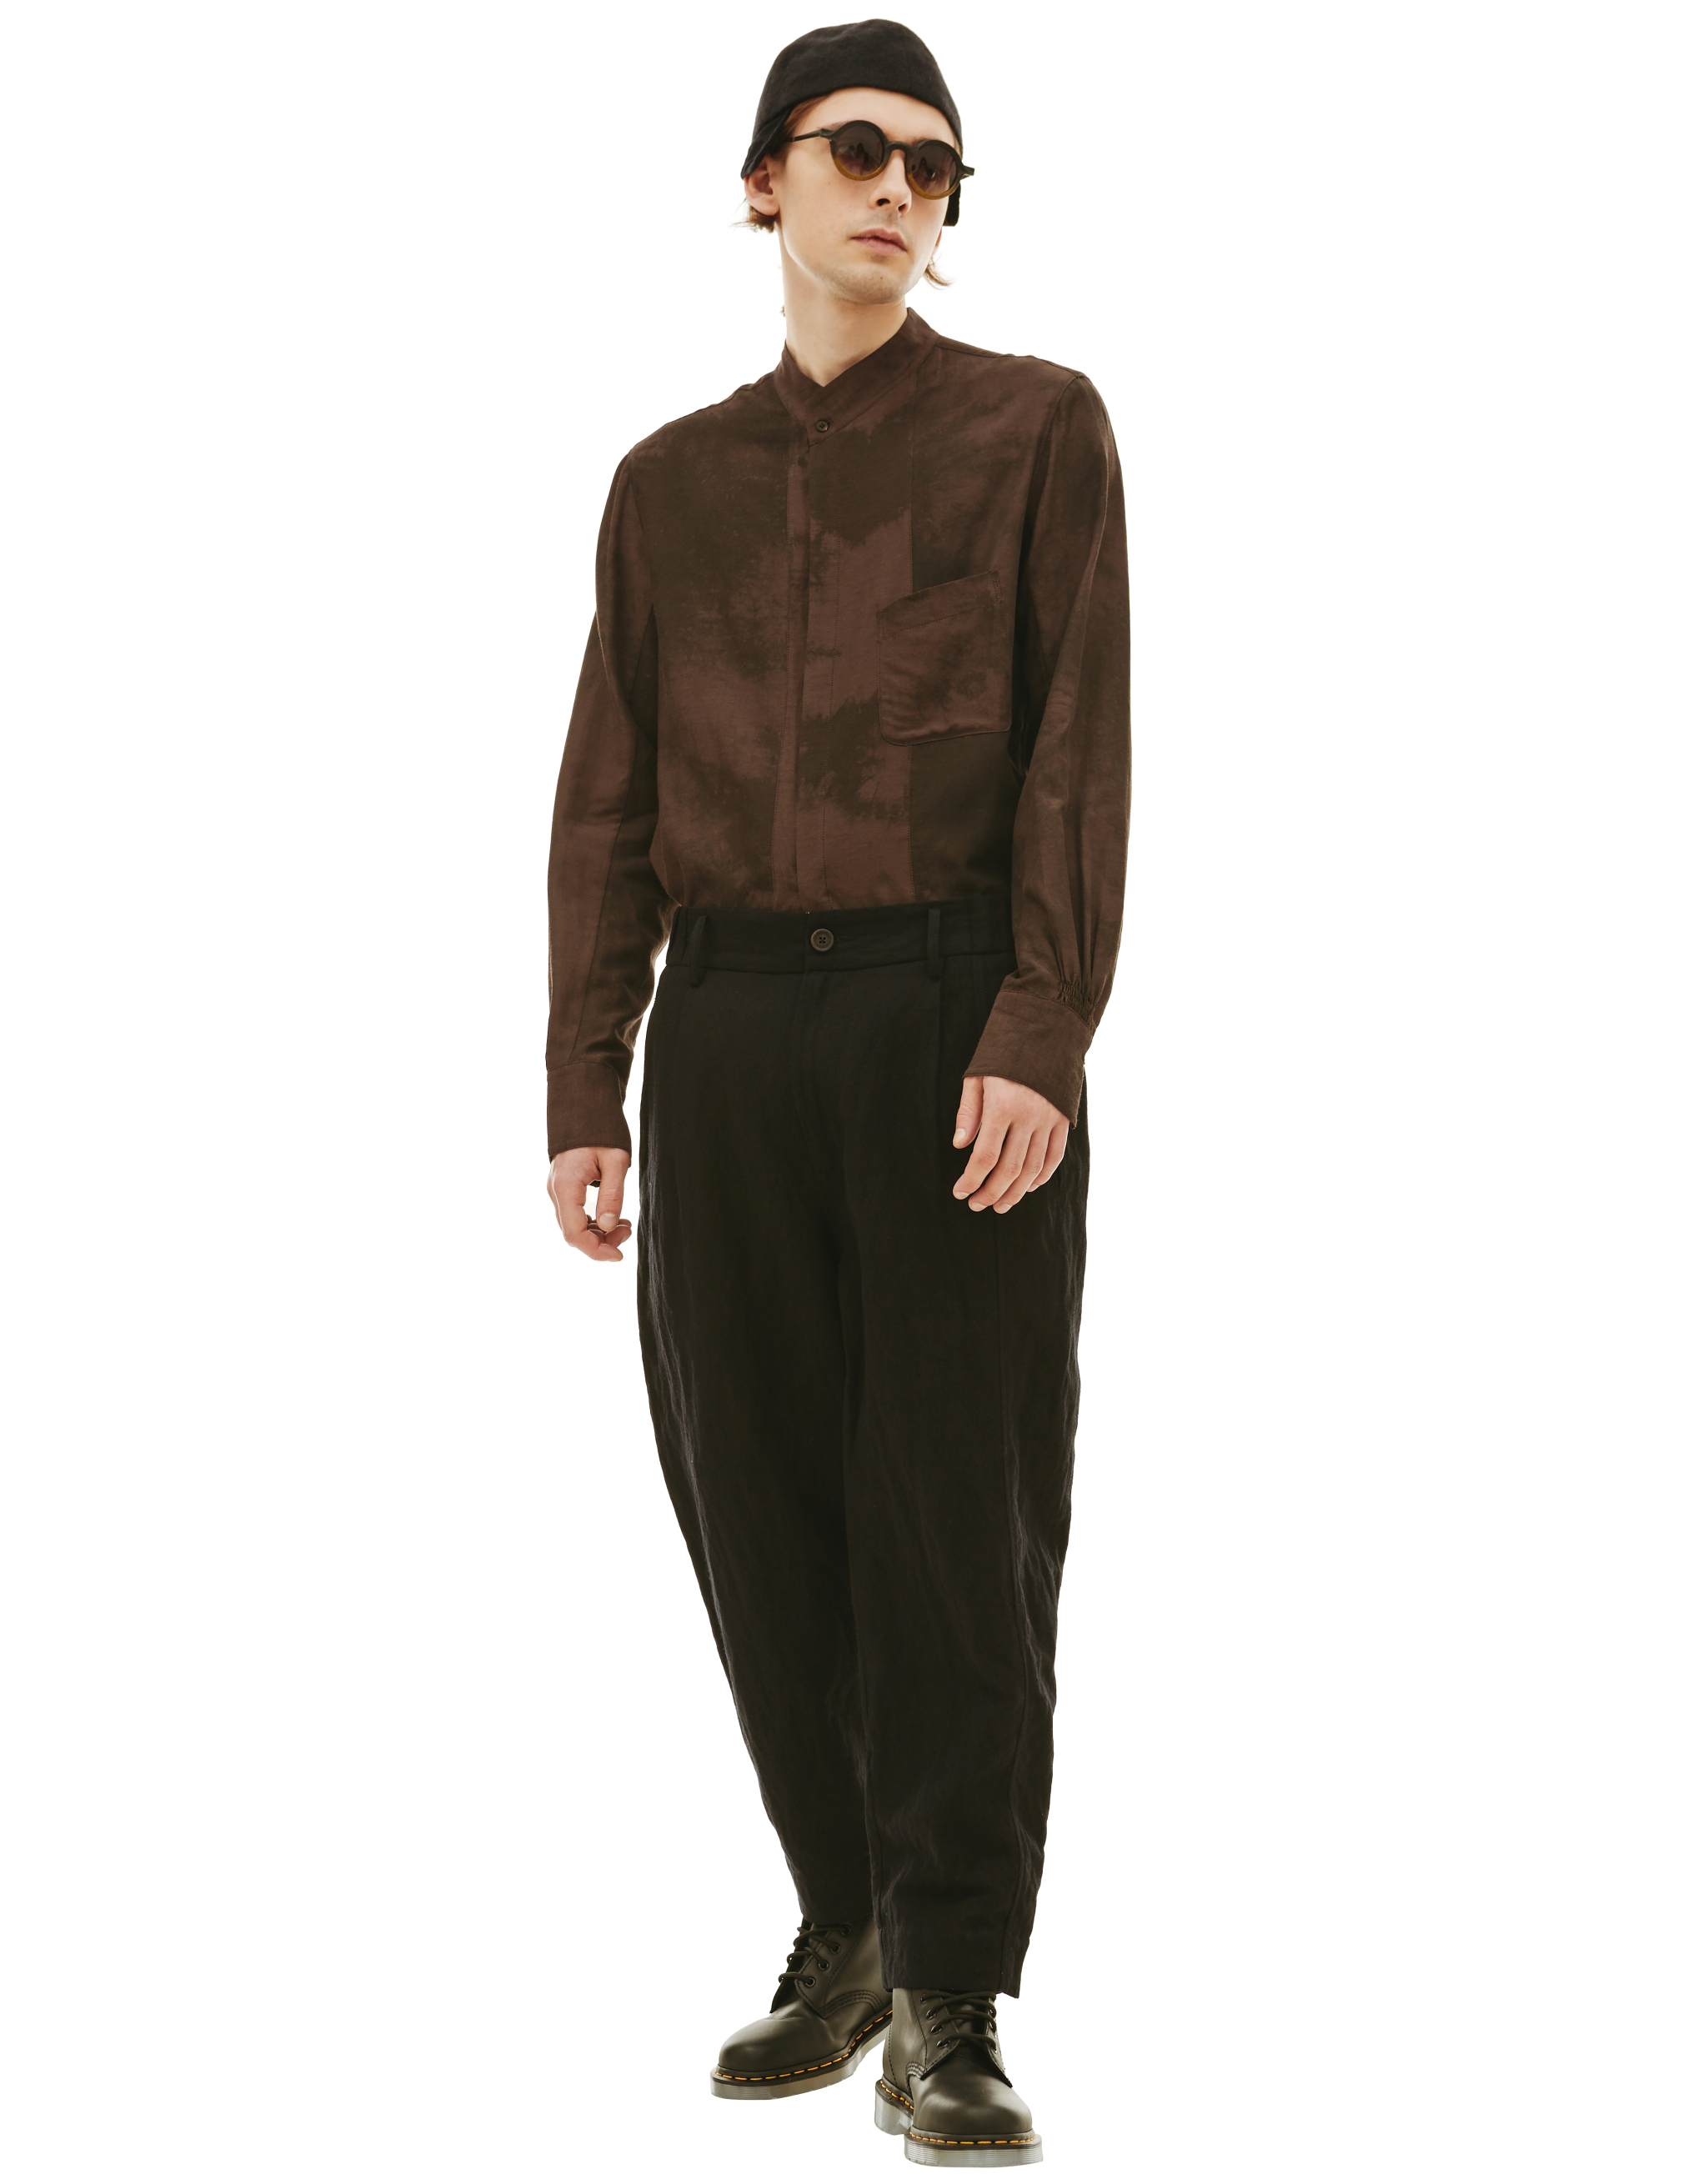 Свободные брюки с контрастной полоской Ziggy Chen 0M2230535, размер 52;50;48